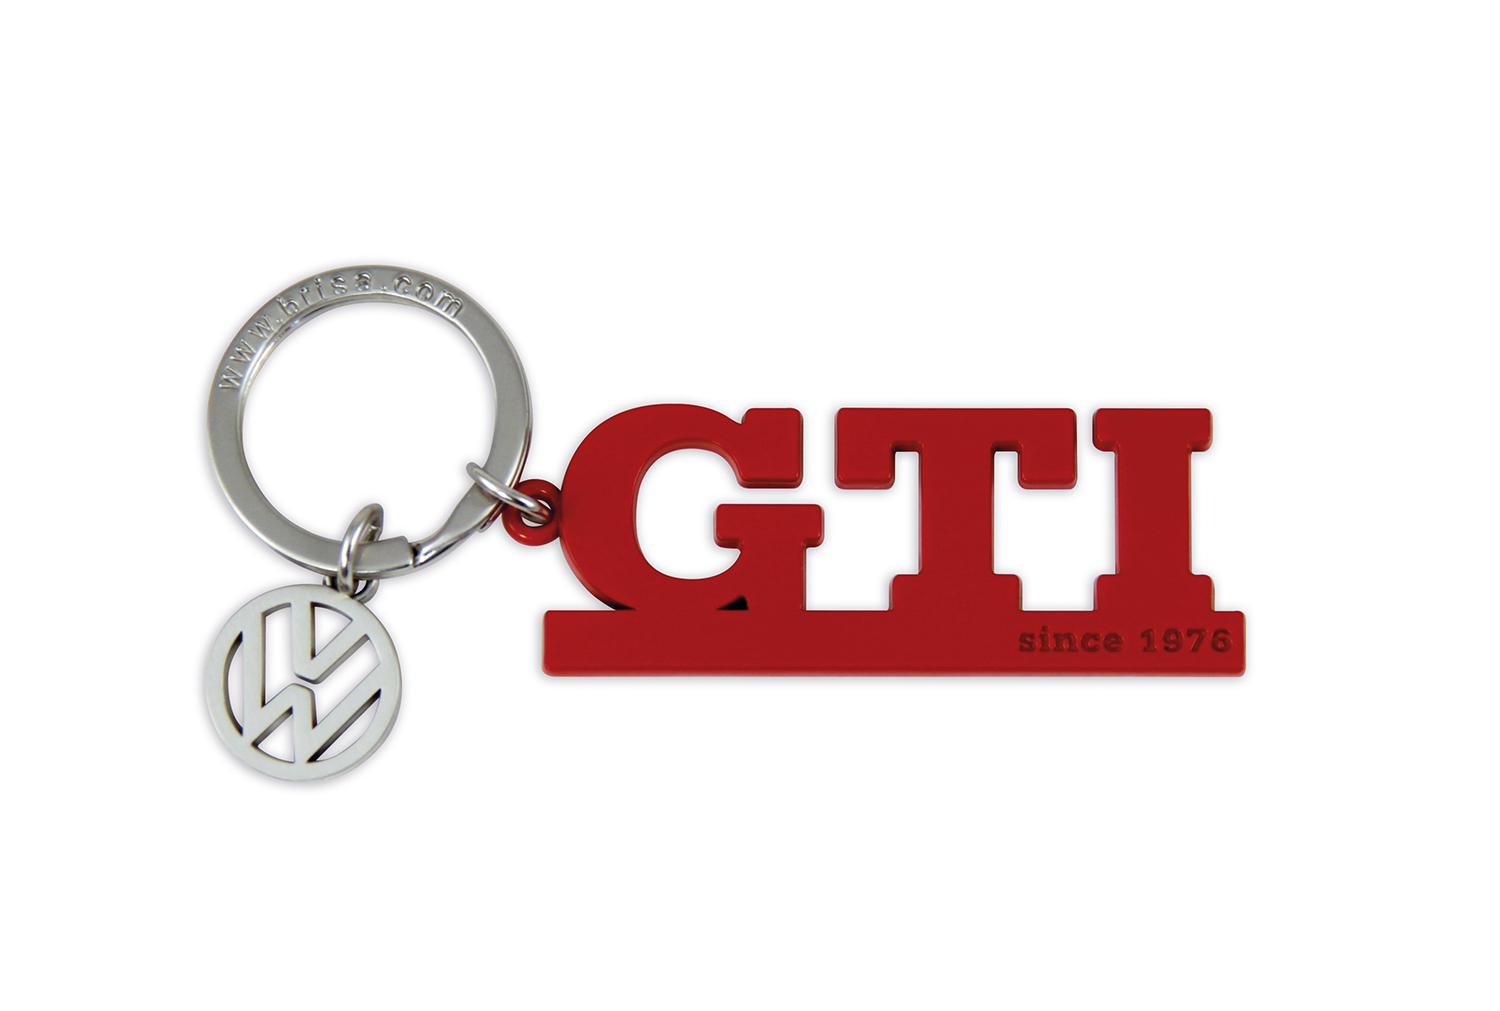 VW GTI keychain with charm